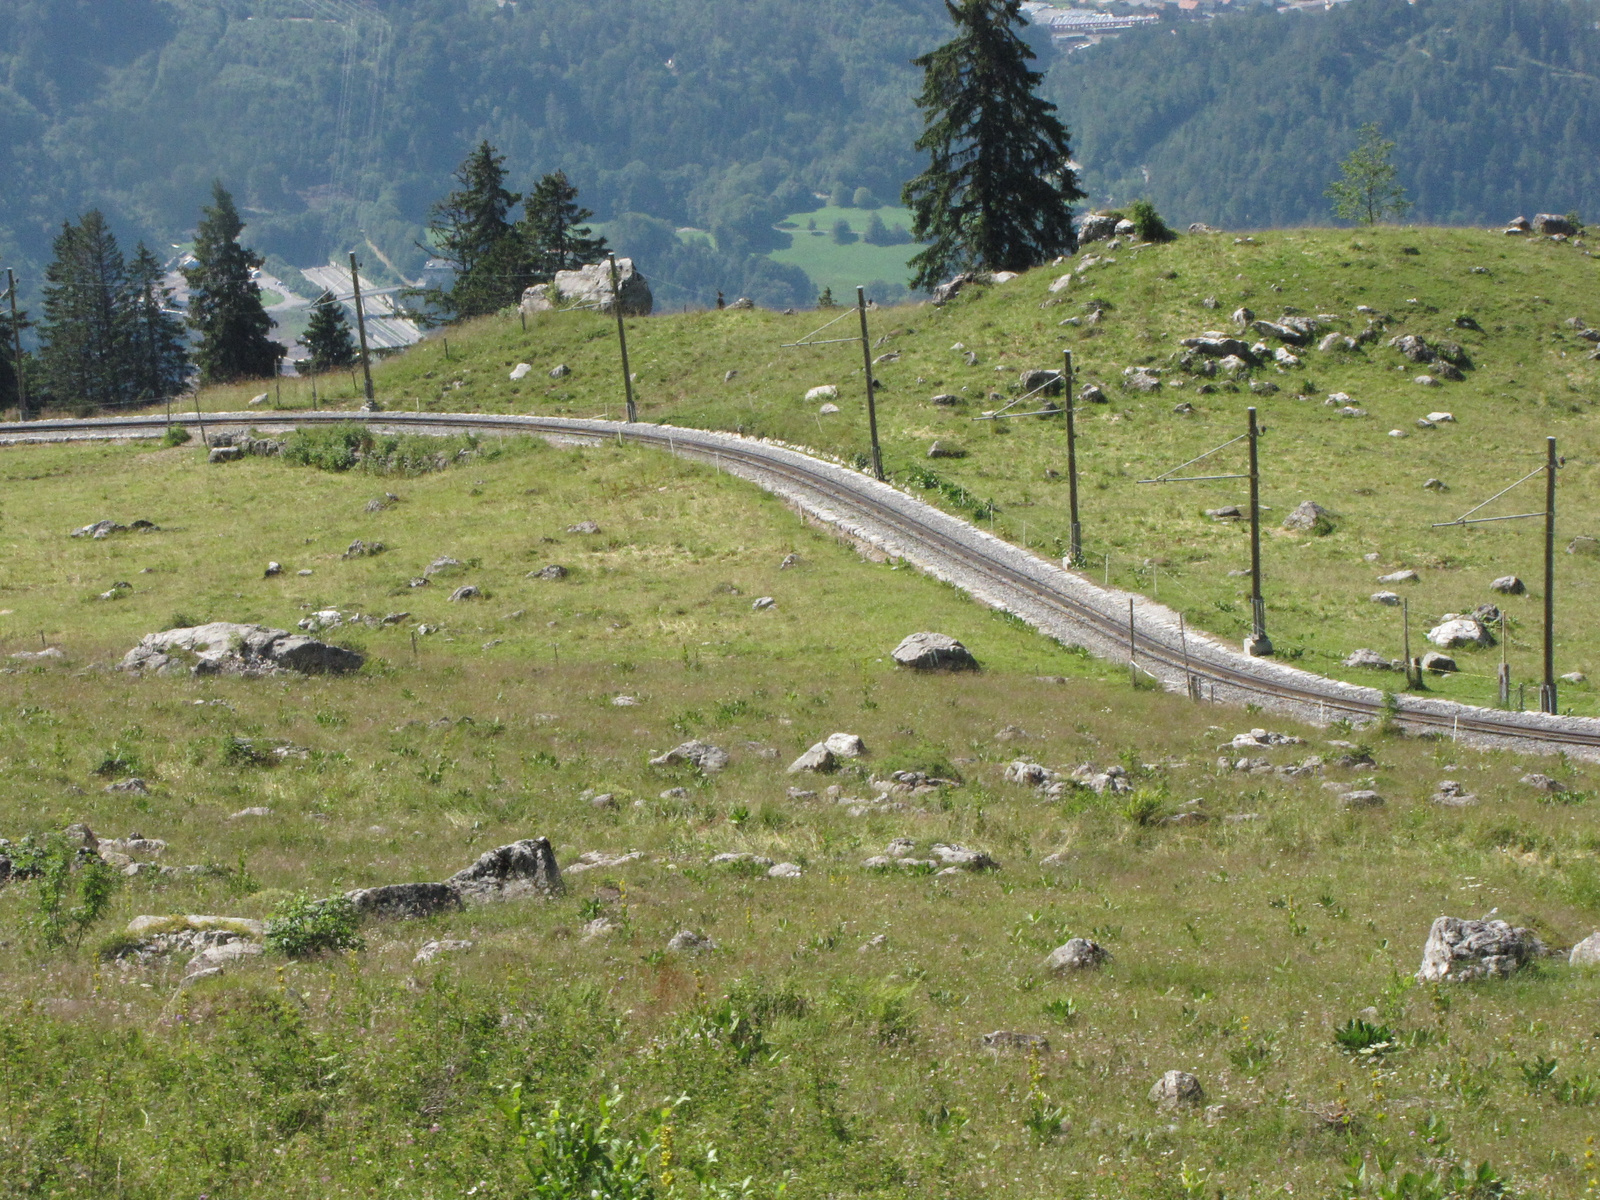 Jungfrau Region, Wilderswil, Schynige Platte Bahn, SzG3